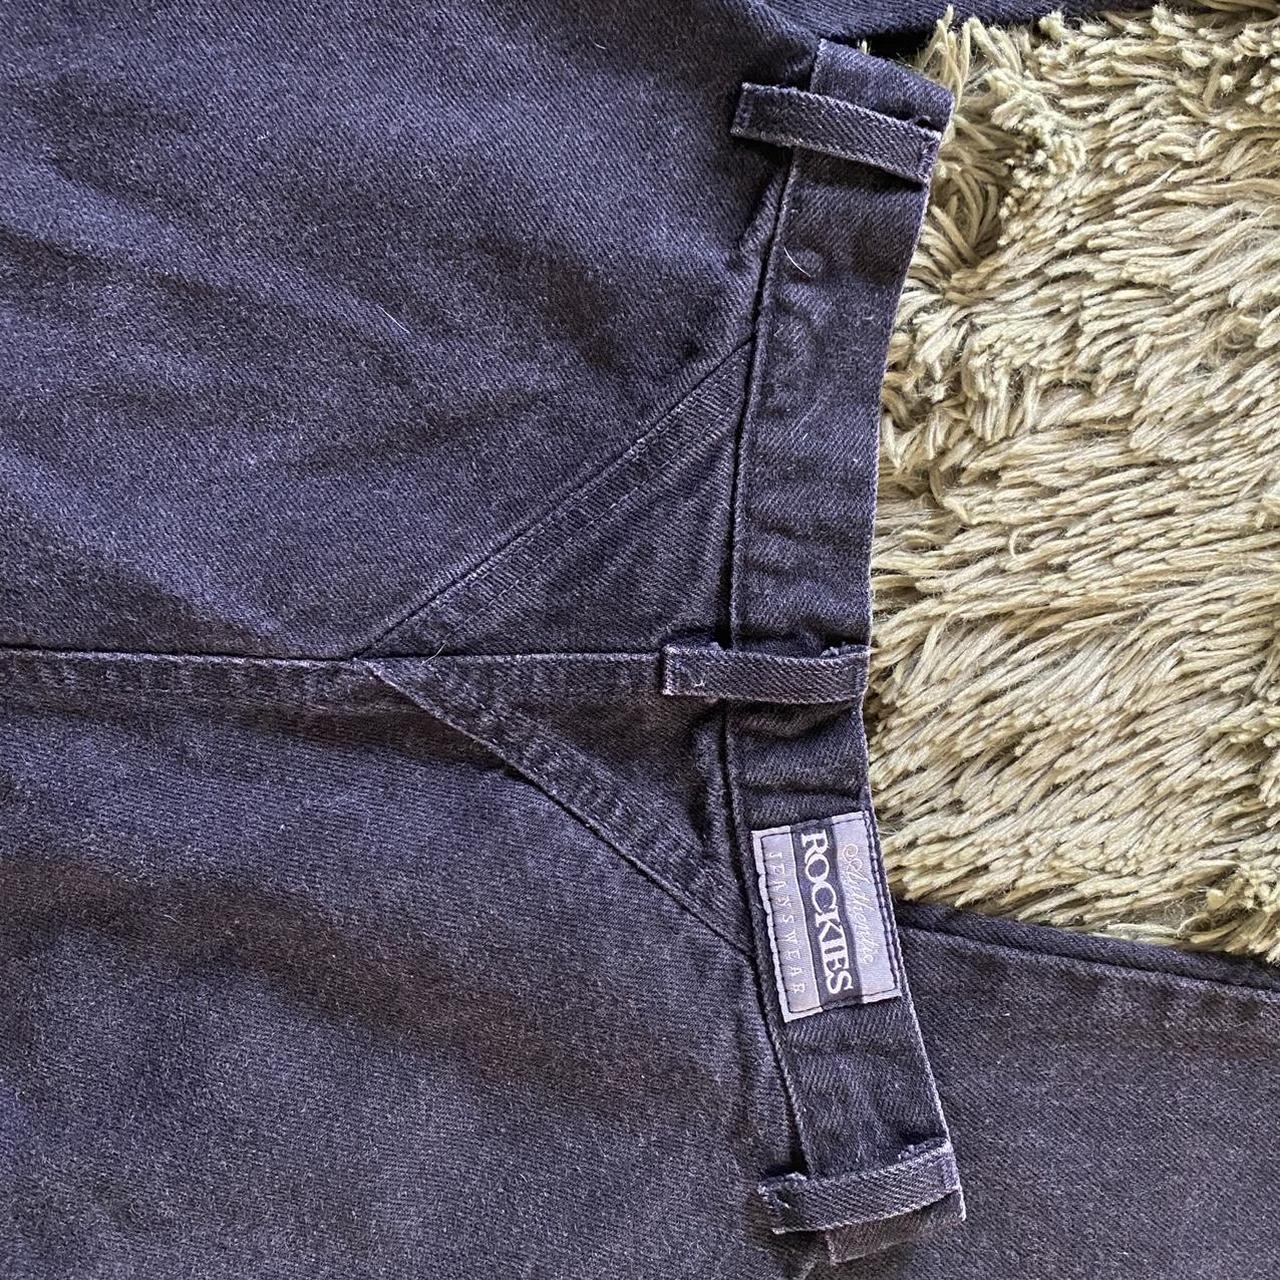 Classic 80’s black Rockies jeans, Near perfect